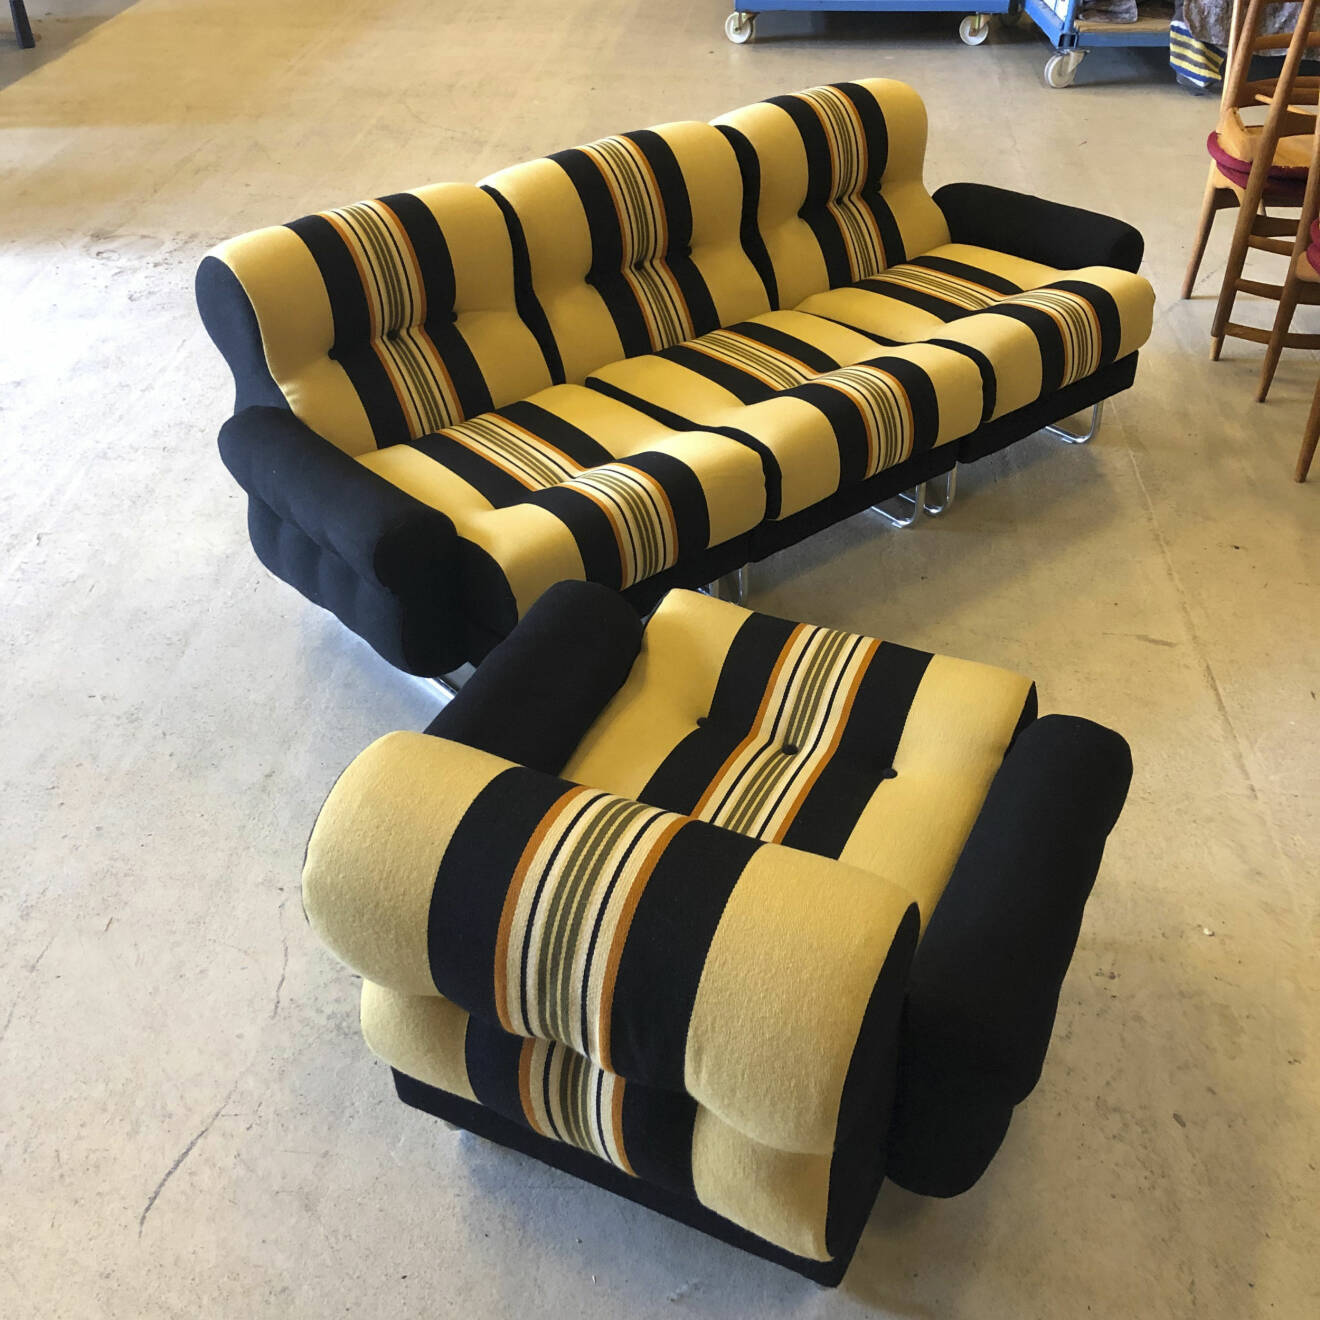 En tresitsig soffa och en fåtaölj i gult- och svartrandigt tyg.